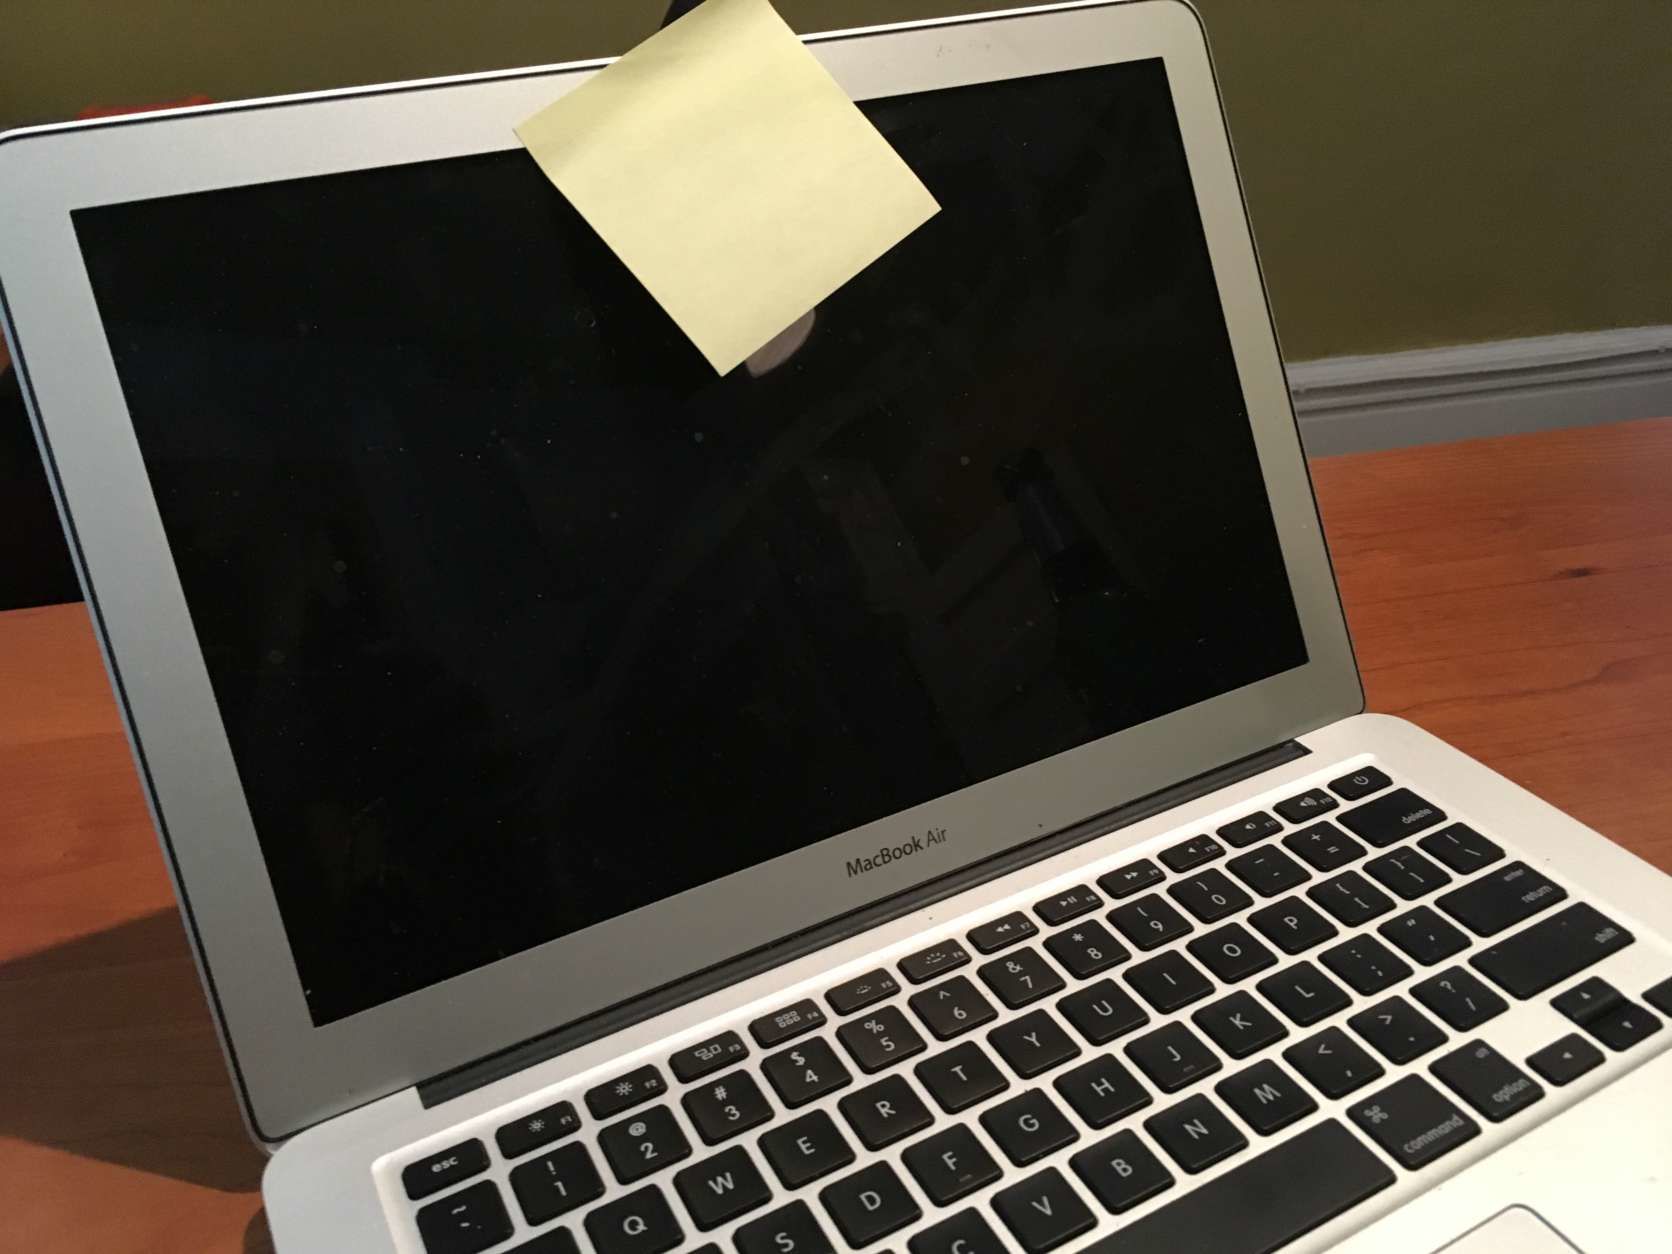 Tanda-tanda Laptop dan PC Sedang Dimata-matai Atau Dihack